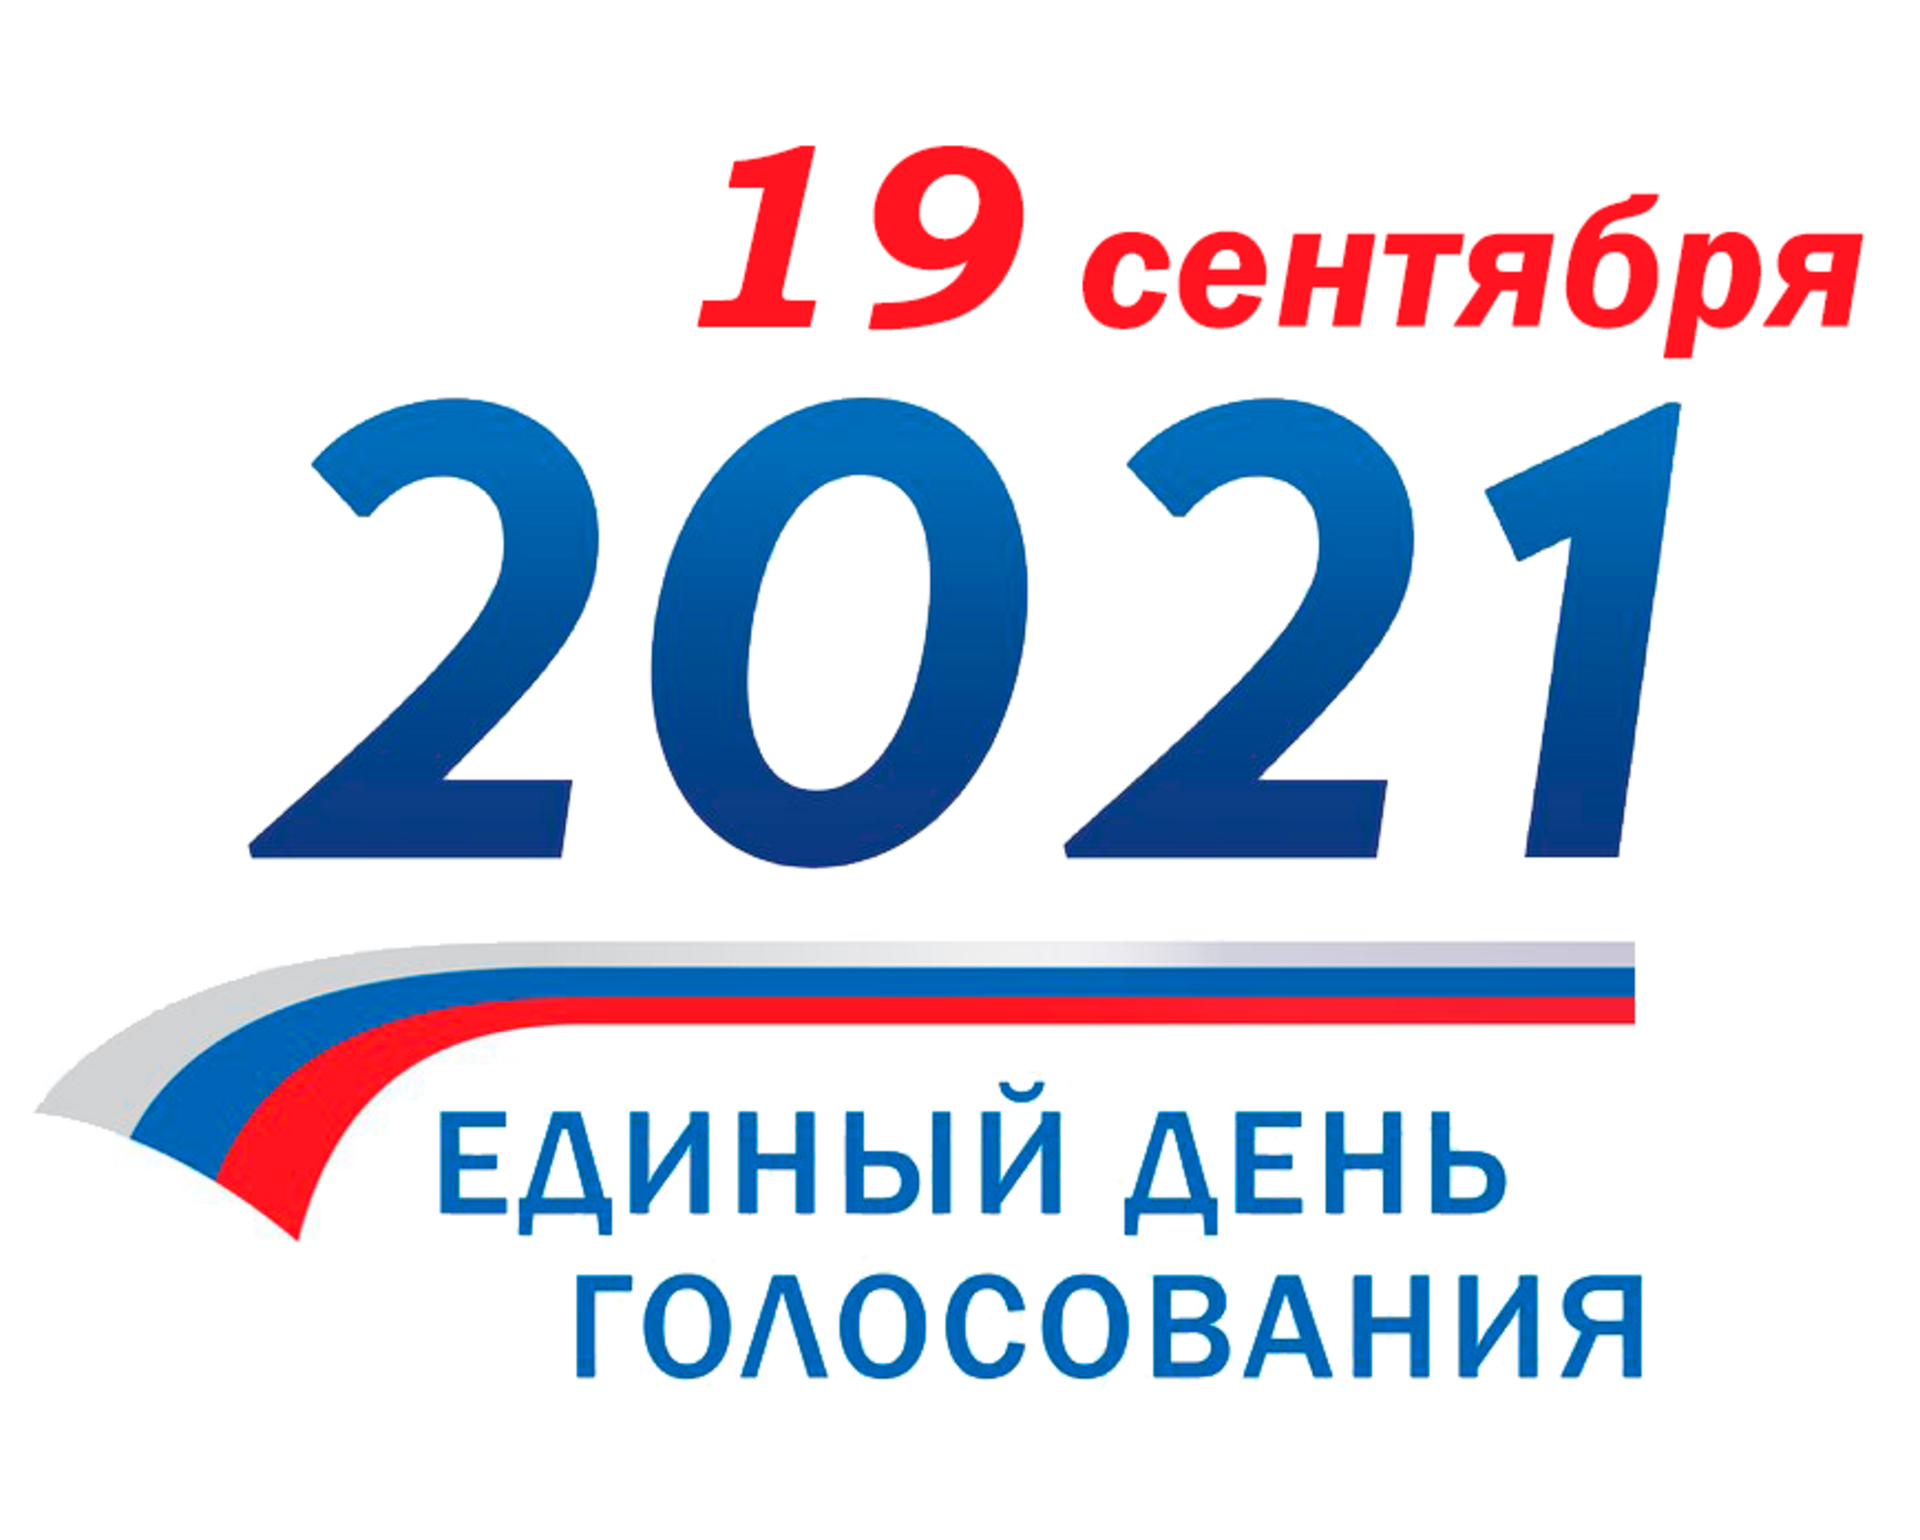 Выборы рф сентябрь. Выборы 2021. Выборы 19 сентября 2021 года. 19 Сентября 2021 единый день голосования. Выборы 2021 в России.